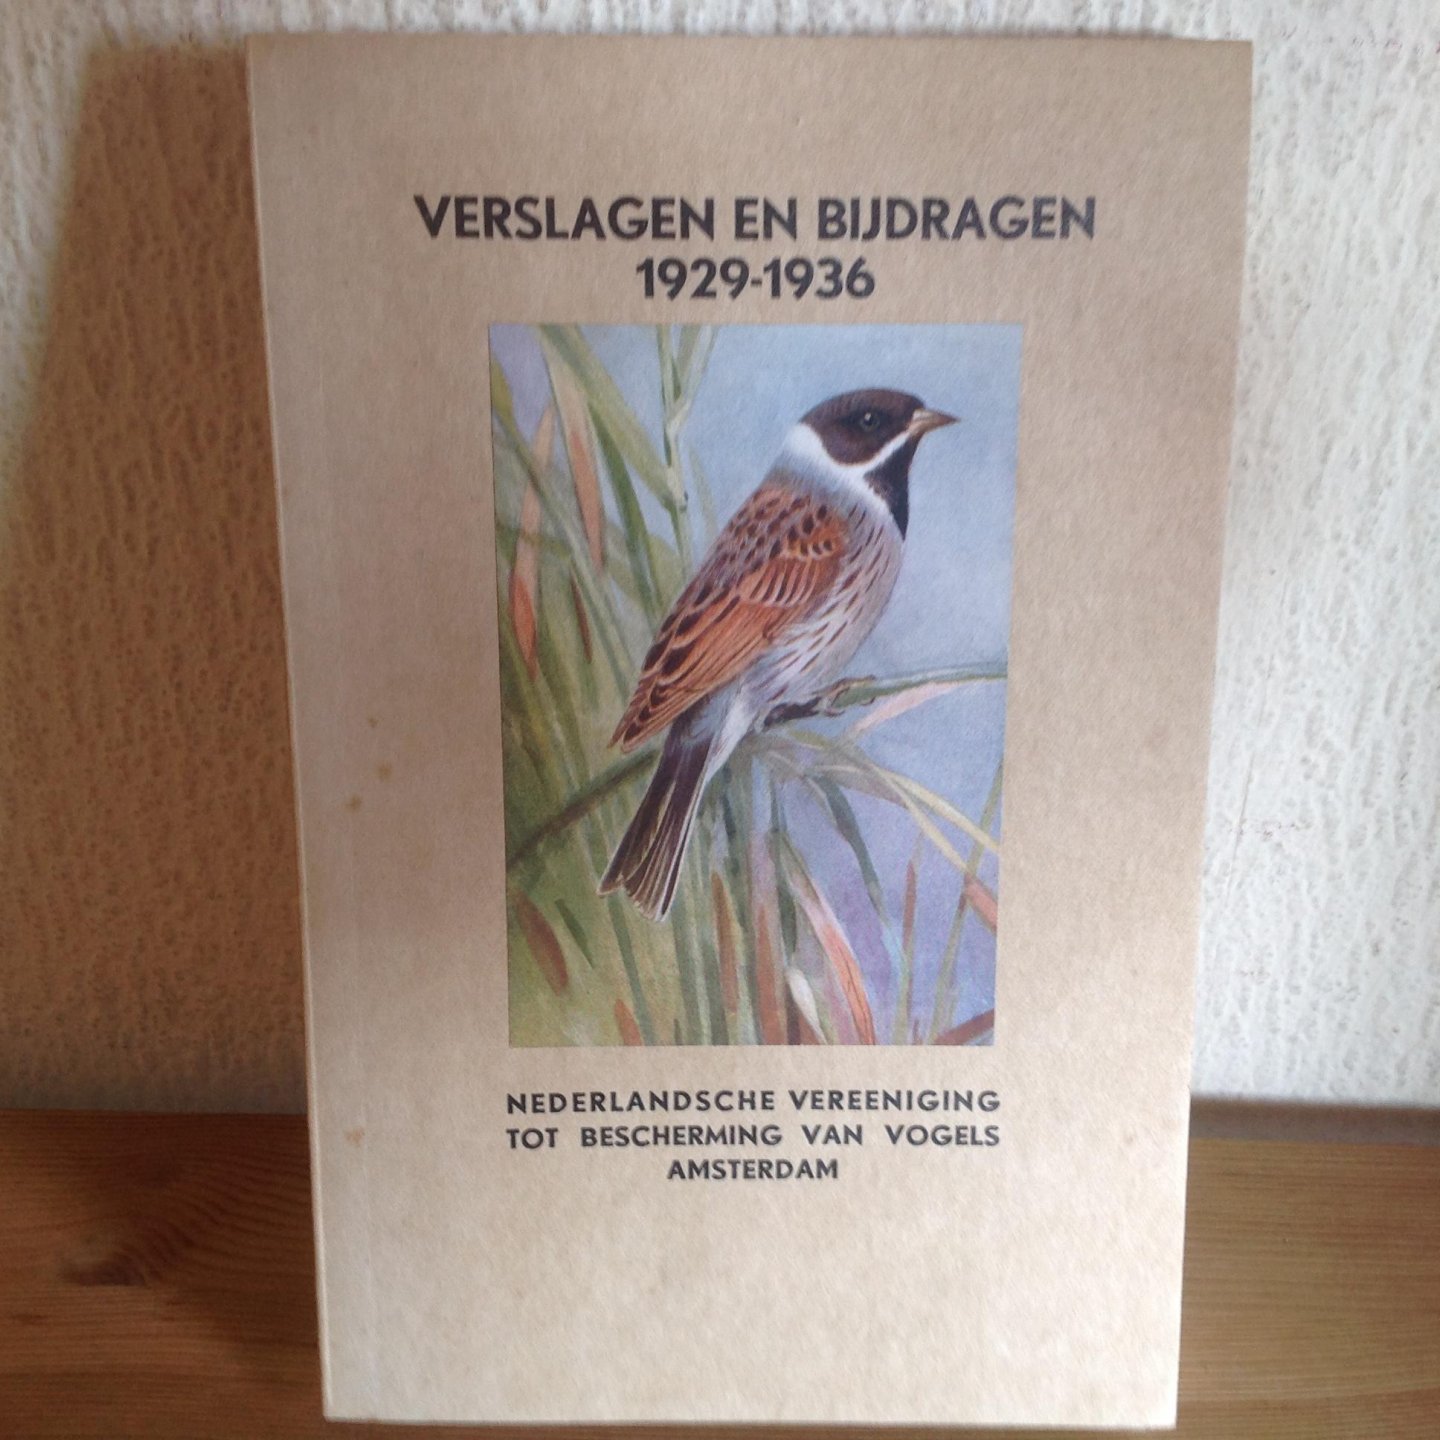  - Verslagen en bijdragen 1929-1936 ,Nederlandsche vereeniging tot Bescherming van vogels AMSTERDAM